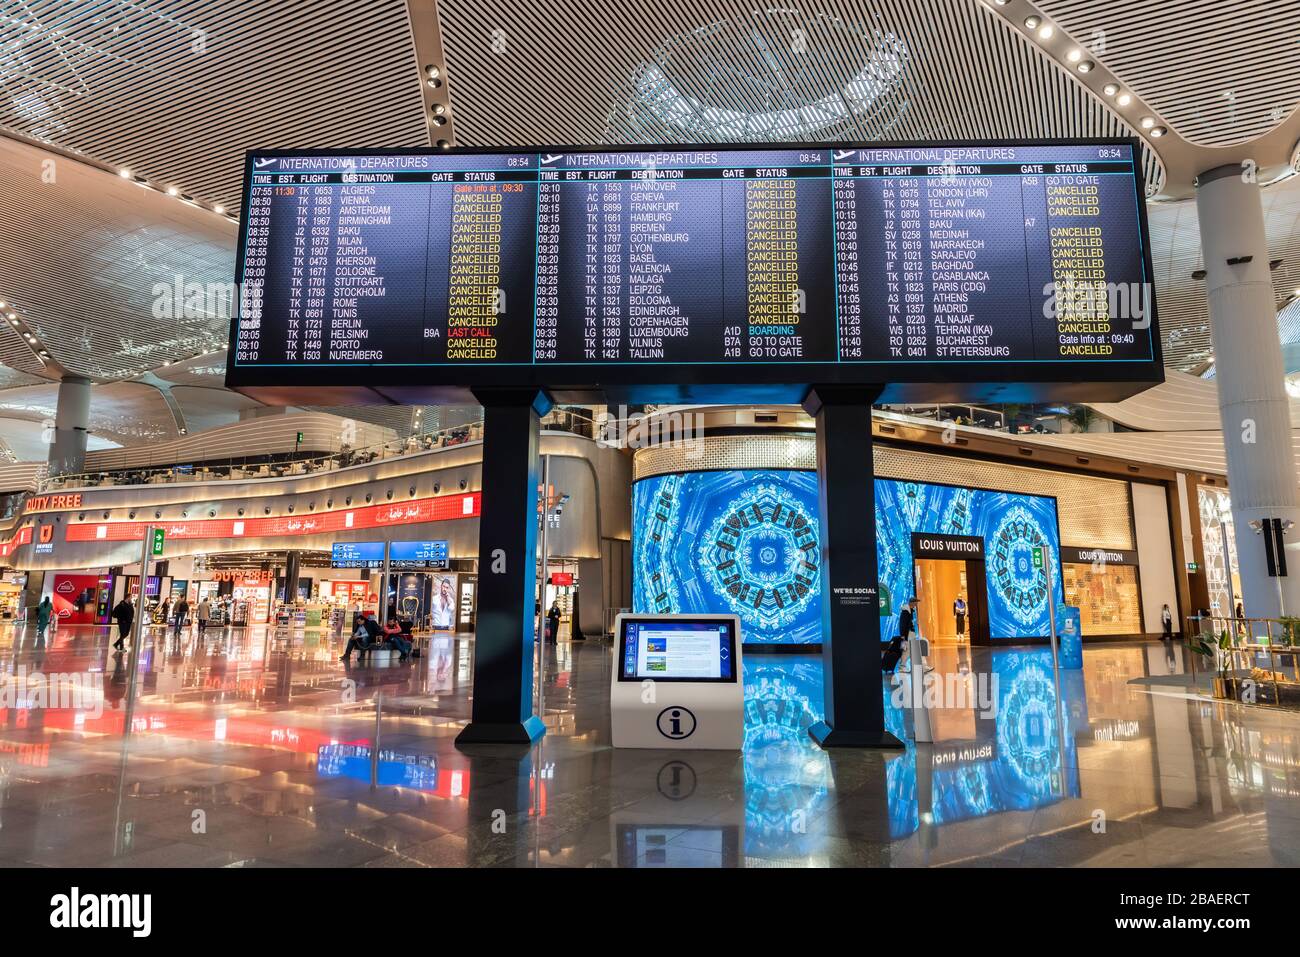 Istanbul, Türkei - 21. März 2020. Bildschirm am desertierten Abflugterminal, der zeigt, dass fast alle internationalen Abflüge vom Flughafen Istanbul c sind Stockfoto